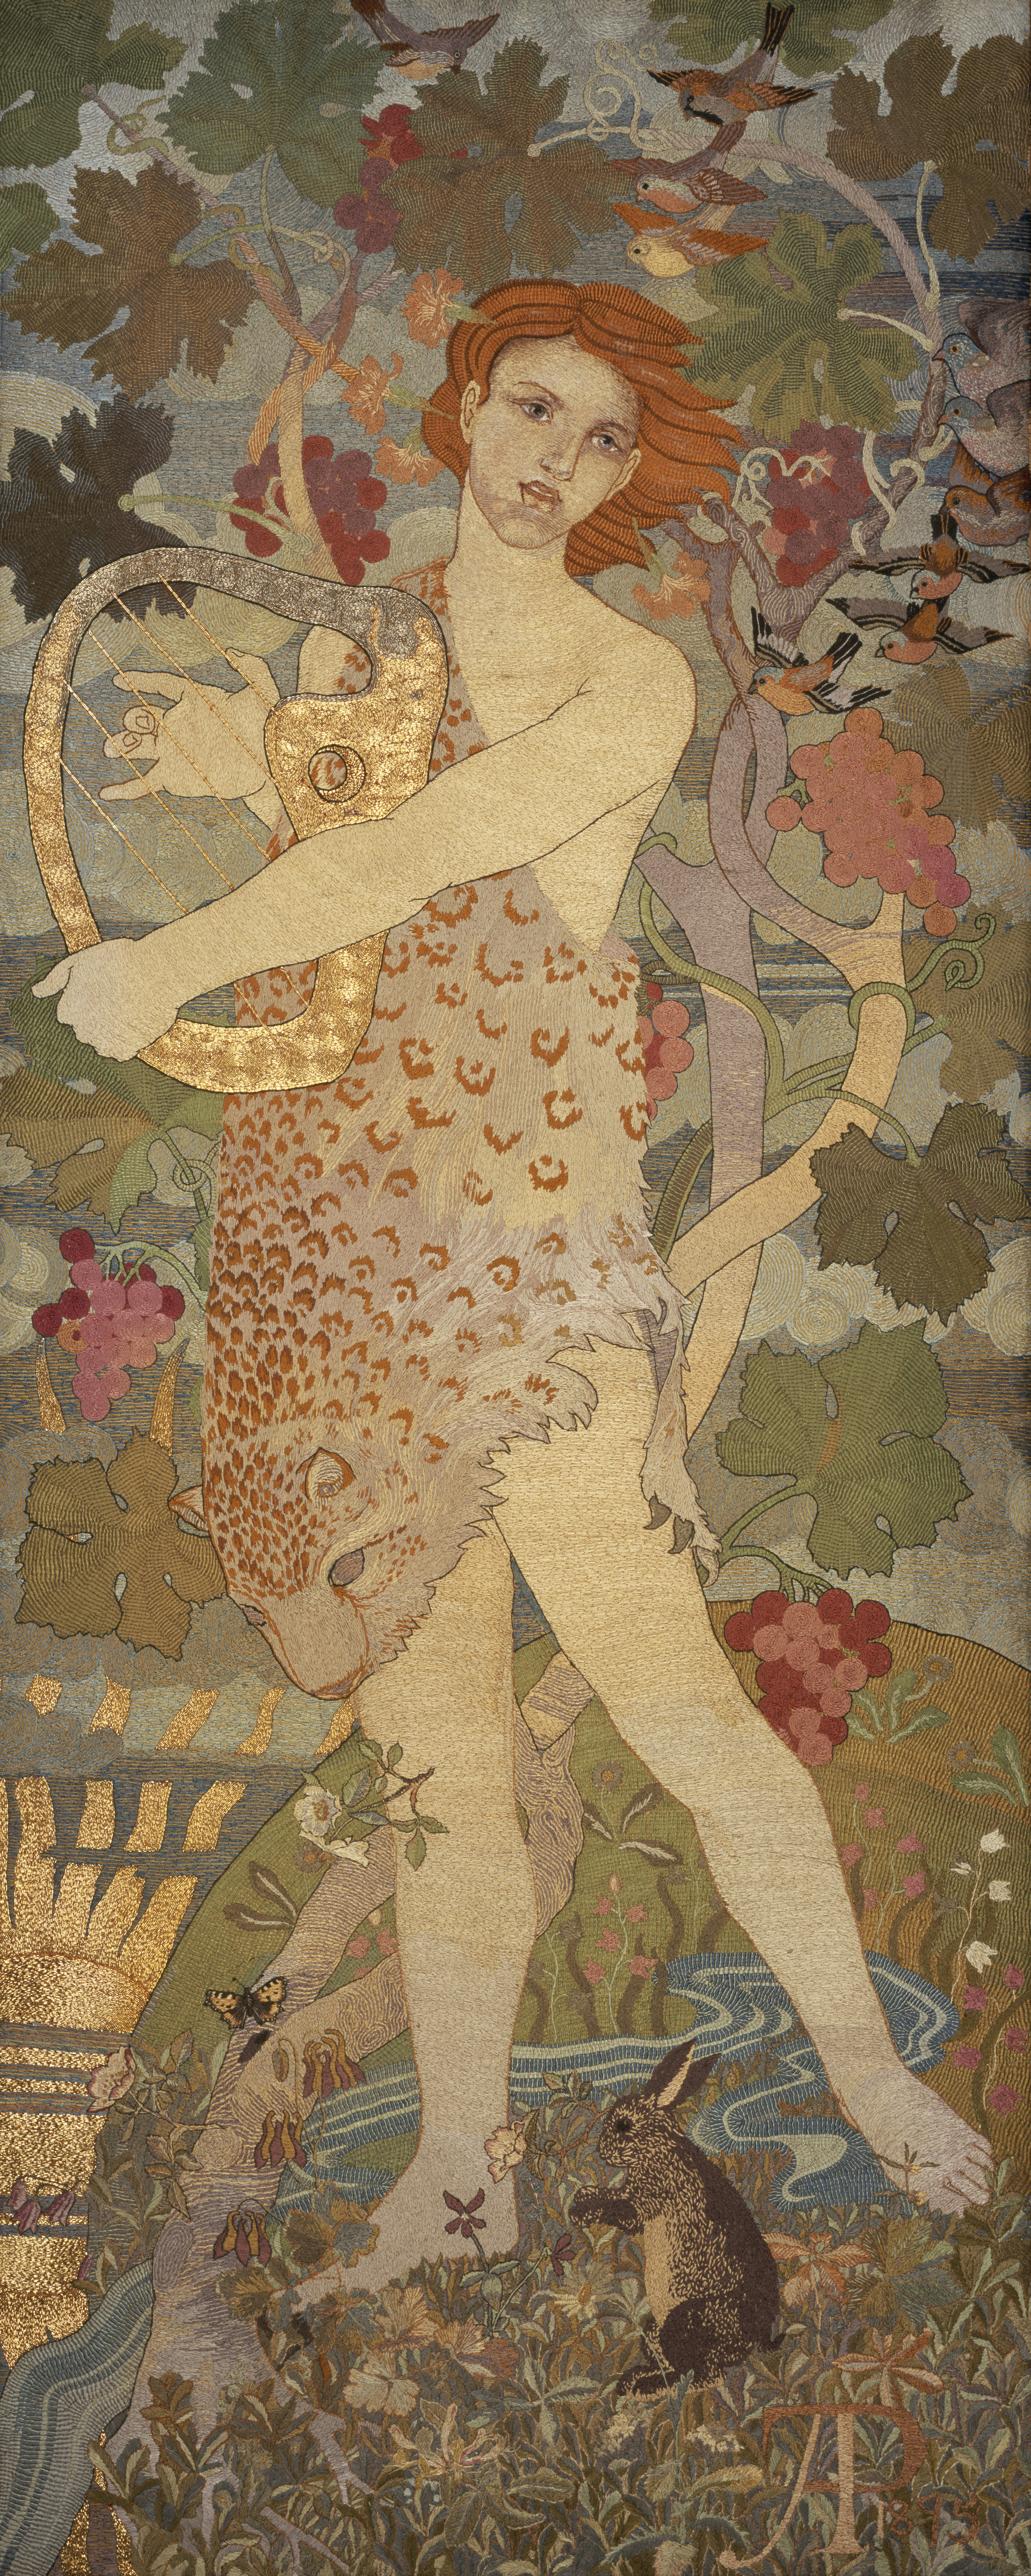 영혼의 전진: 도입 by Phoebe Anna Traquair - 1895 - 180.67 x 71.20 cm 